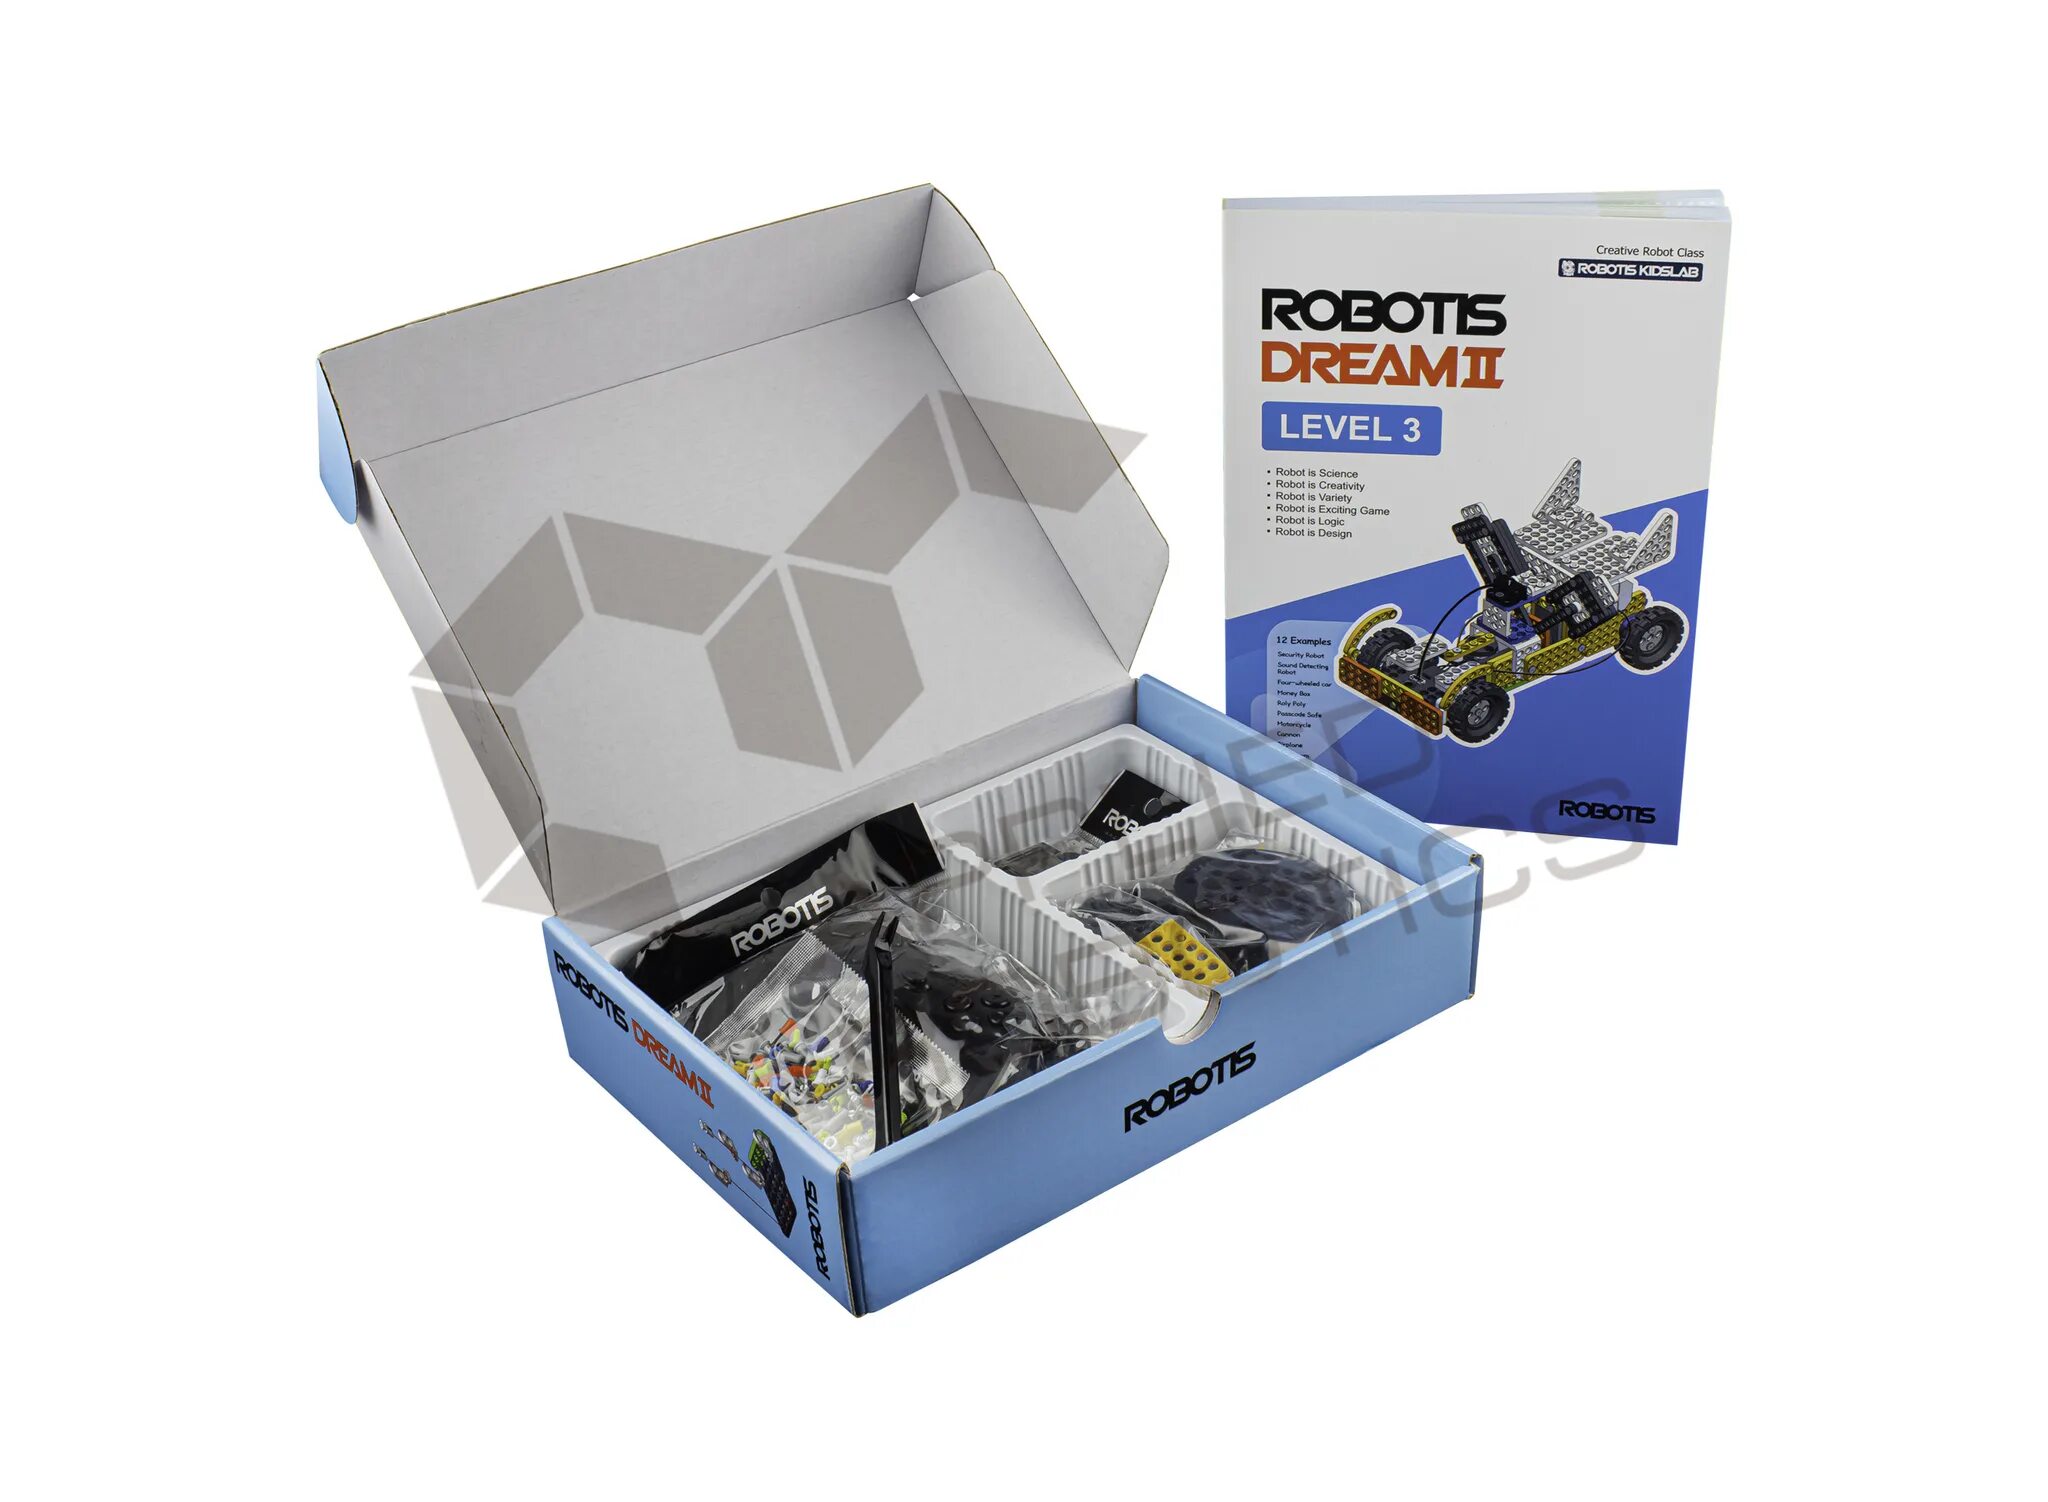 Level 2 10. Robotis Dream II Level 1 Kit артикул: 901-0036-201. Комплект робототехнический образовательный robotis Dream II lvl 4. Robotis Dream II заклёпка. Электромеханический конструктор robotis Dream 0066 уровень 3+4.